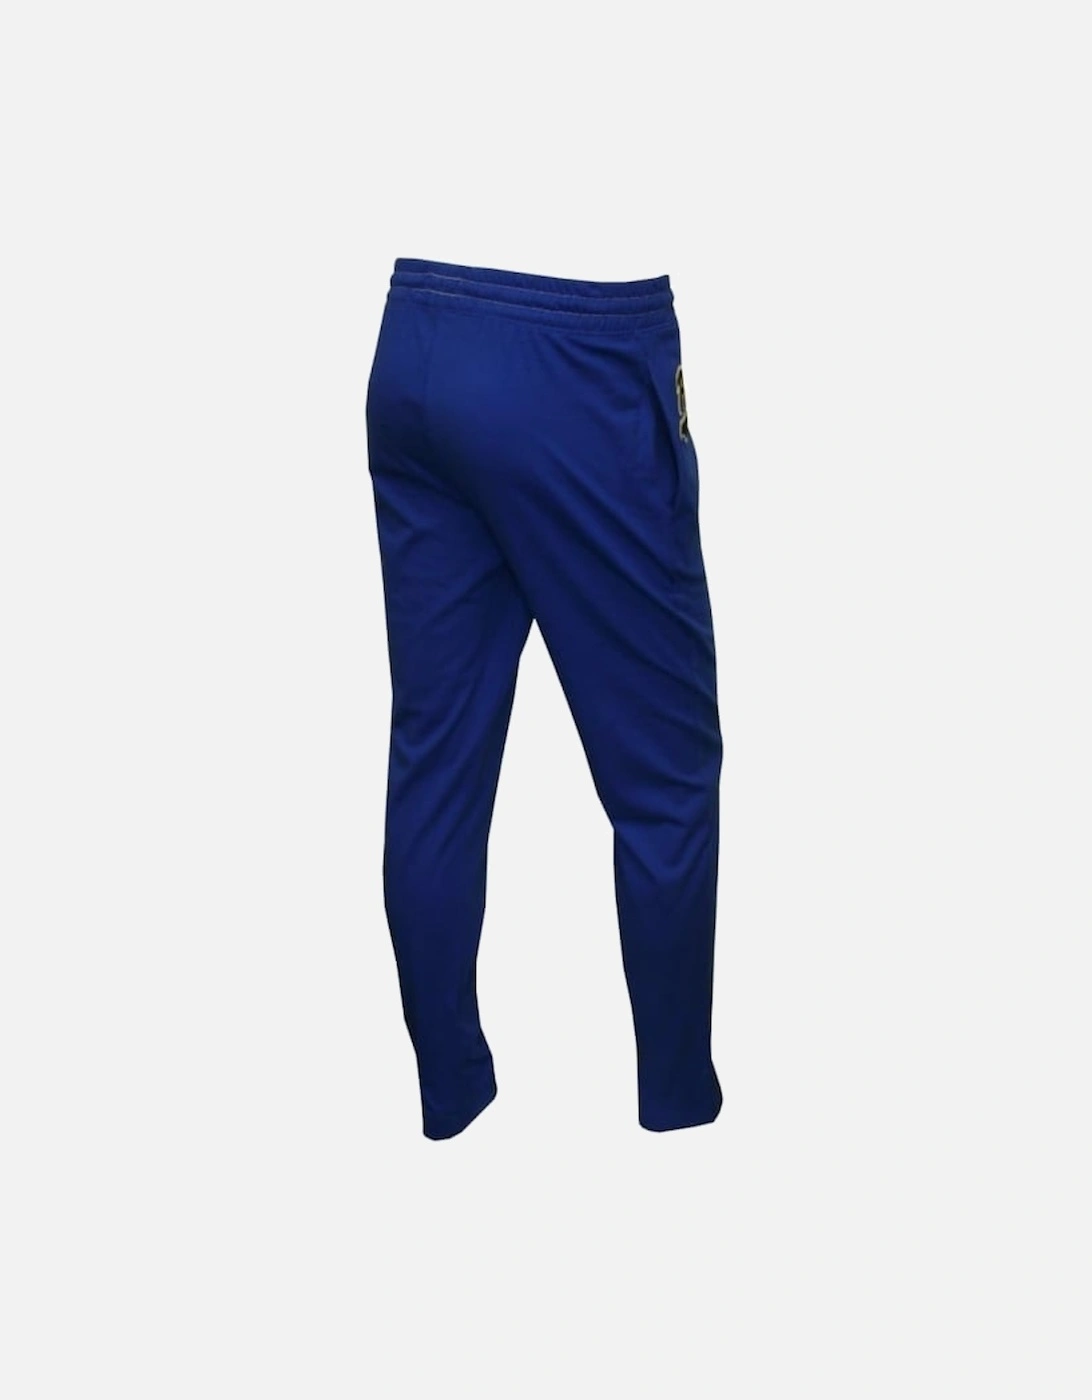 Cursive "Polo" Logo Jersey Lounge Pants, Royal Blue